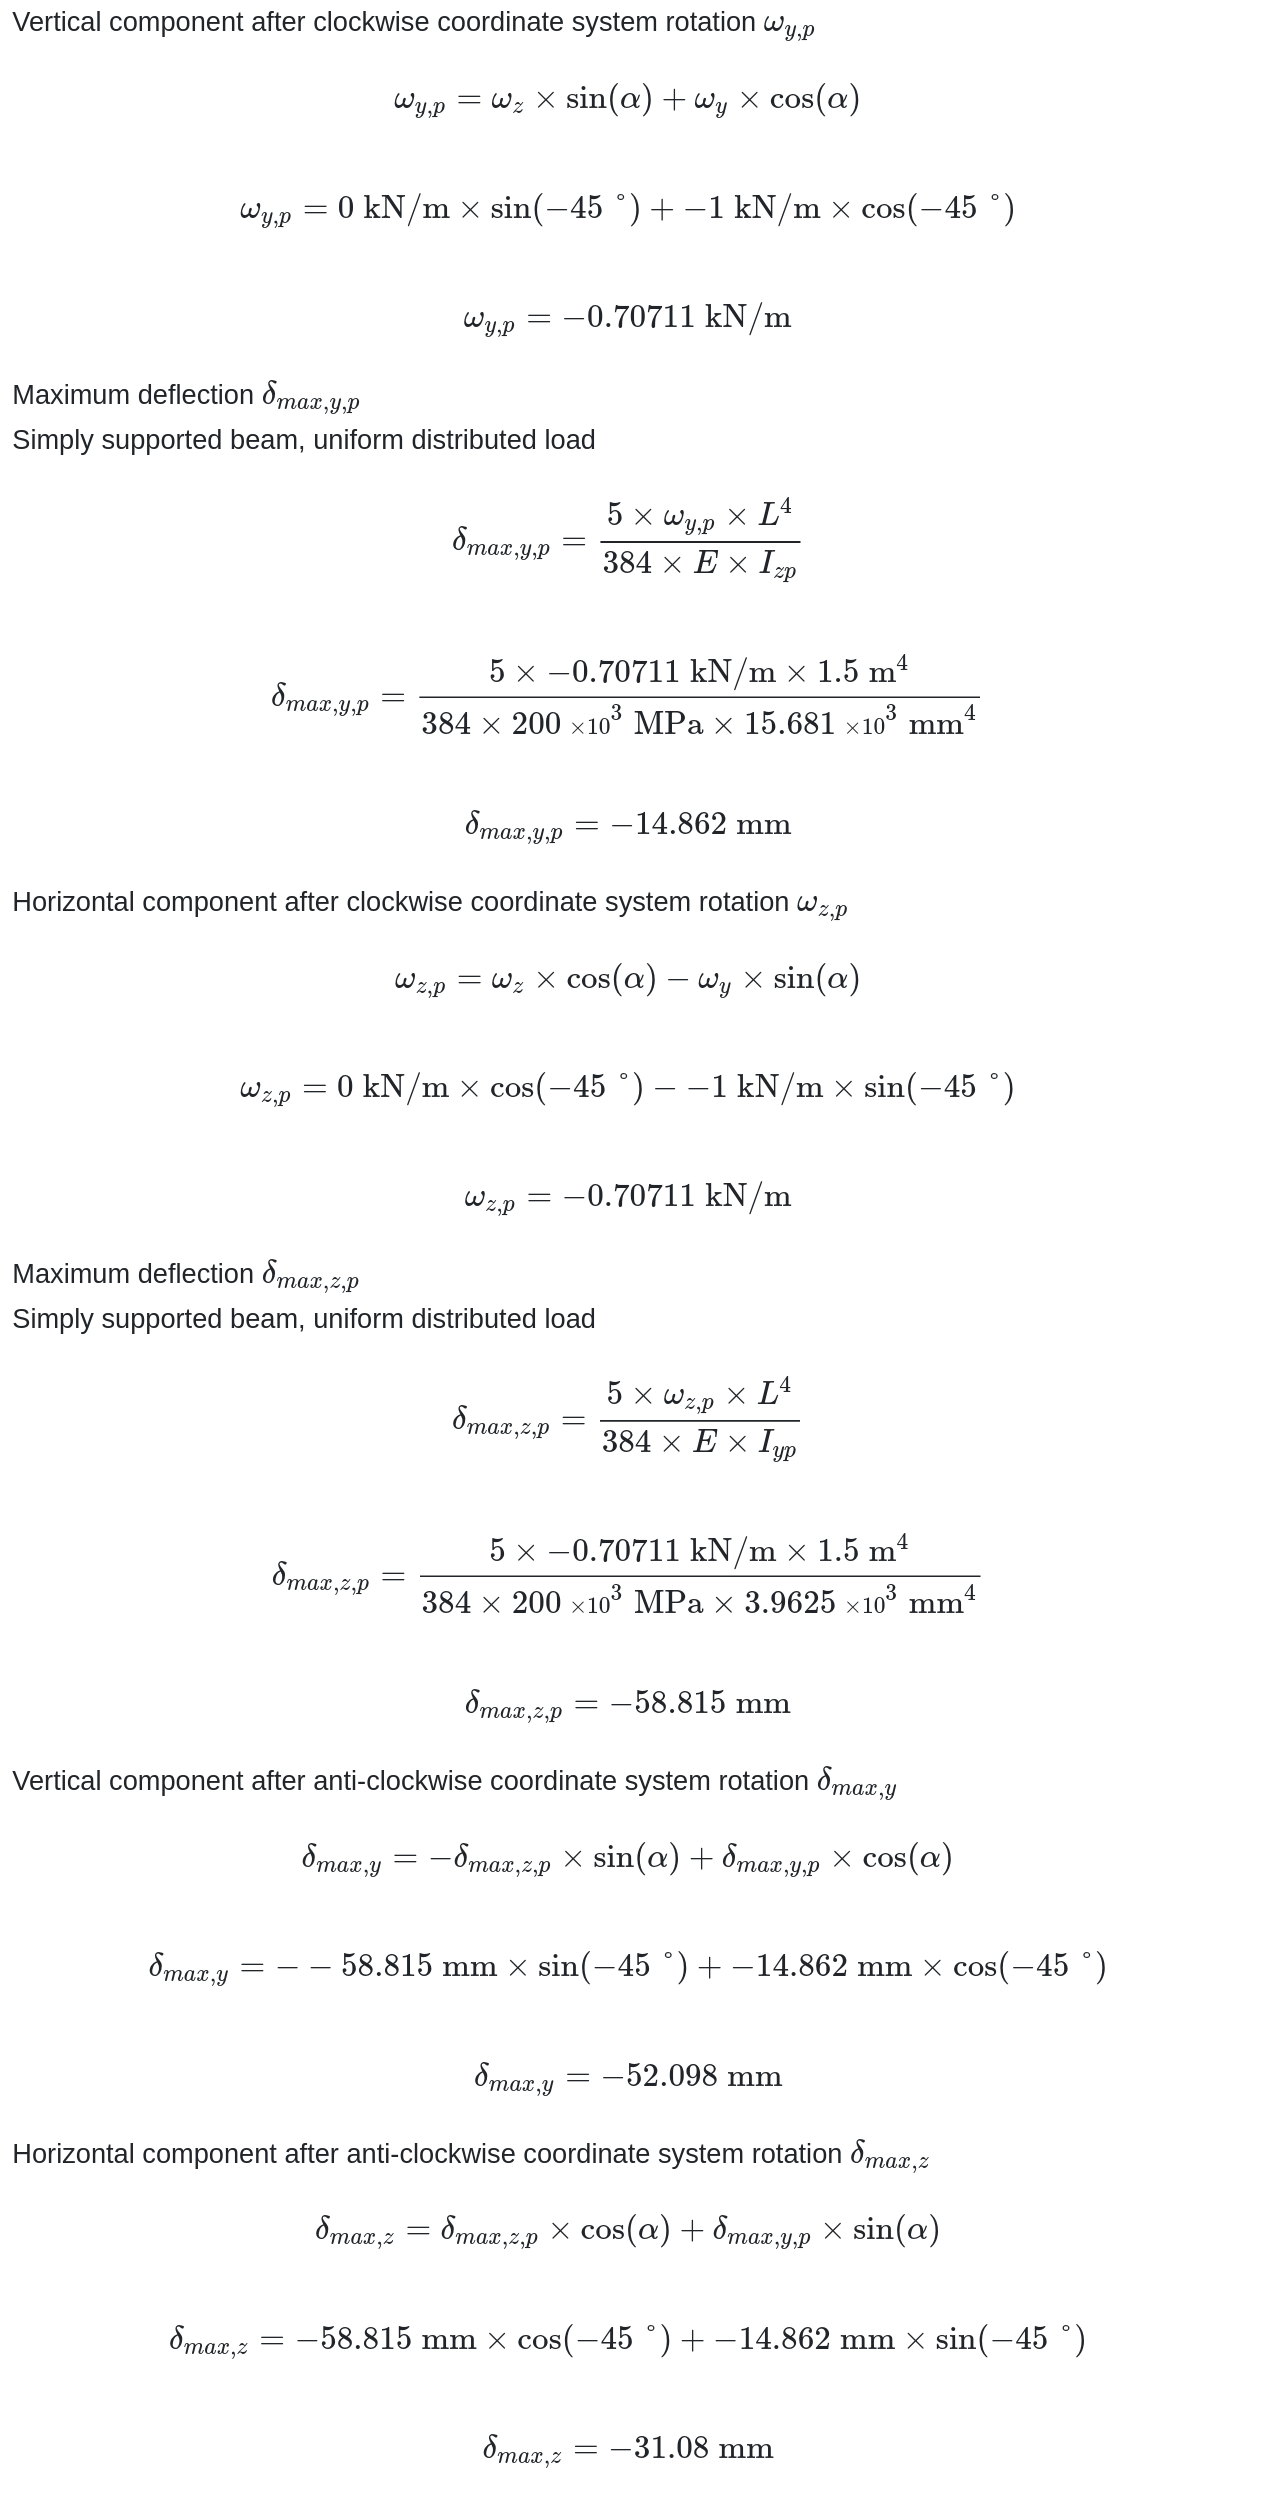 Sezioni asimmetriche - calcoli manuali